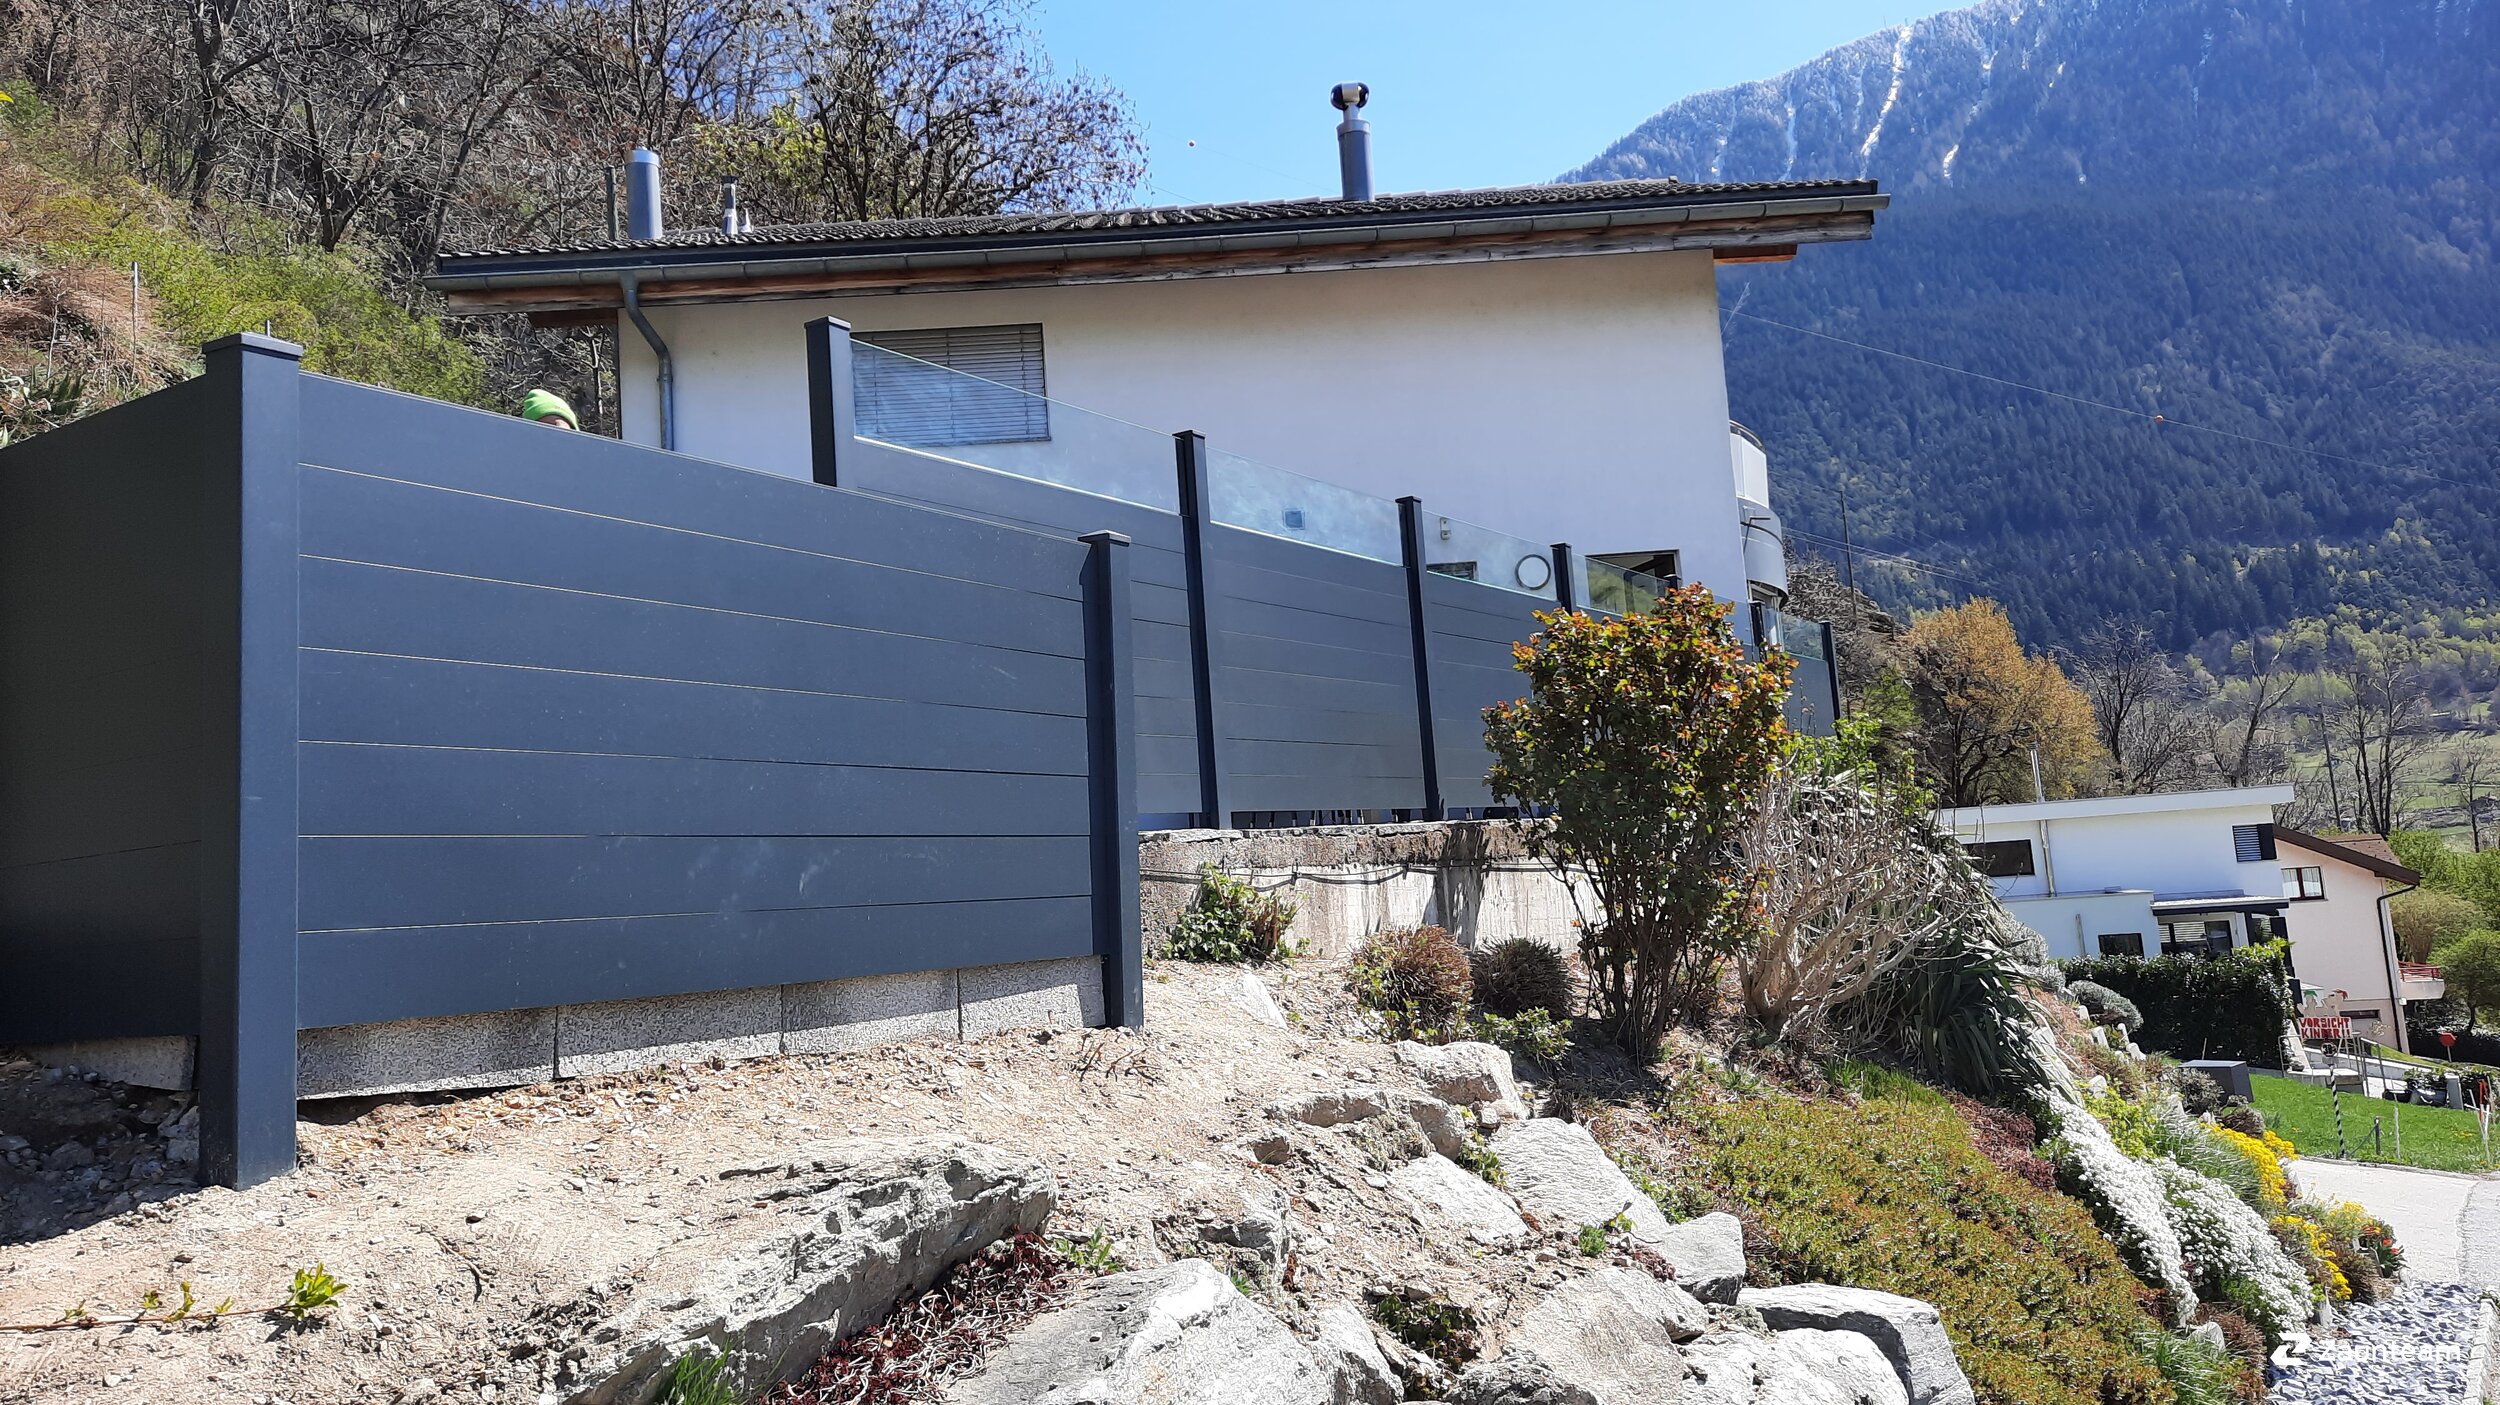 Protection brise-vue en aluminium de 2021 à 3931 Lalden Suisse de Zaunteam Wallis / Swissclôture Valais.